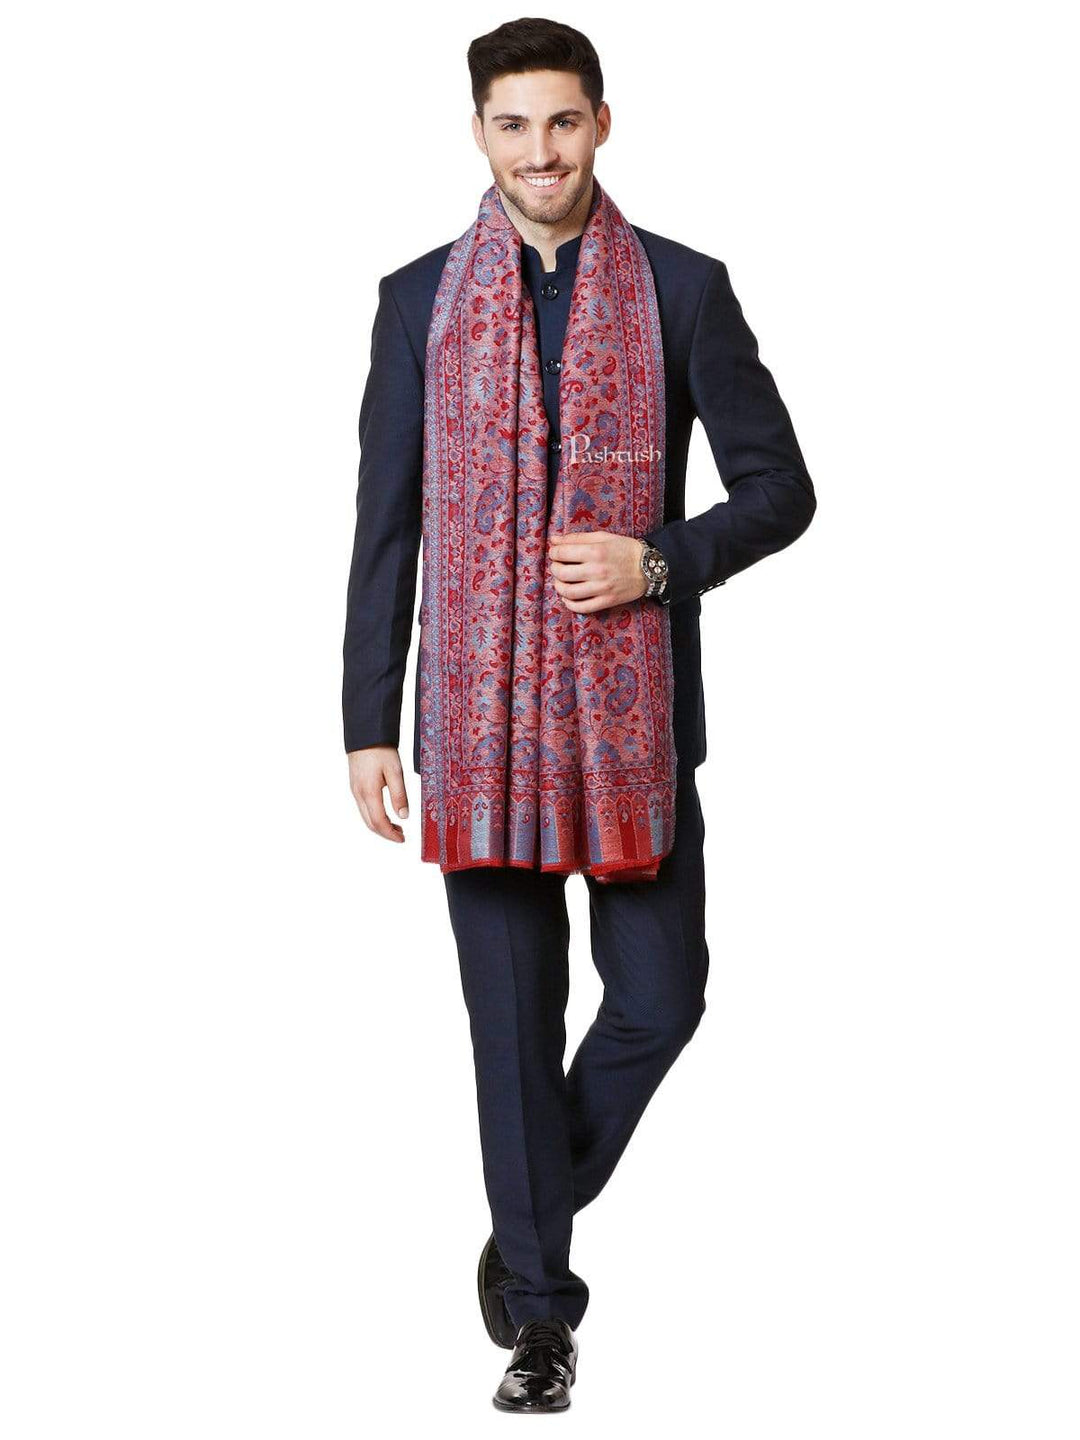 Pashtush India 70x200 Pashtush Mens Kaani Weave Stole, Fine Wool, Reversible, Azure